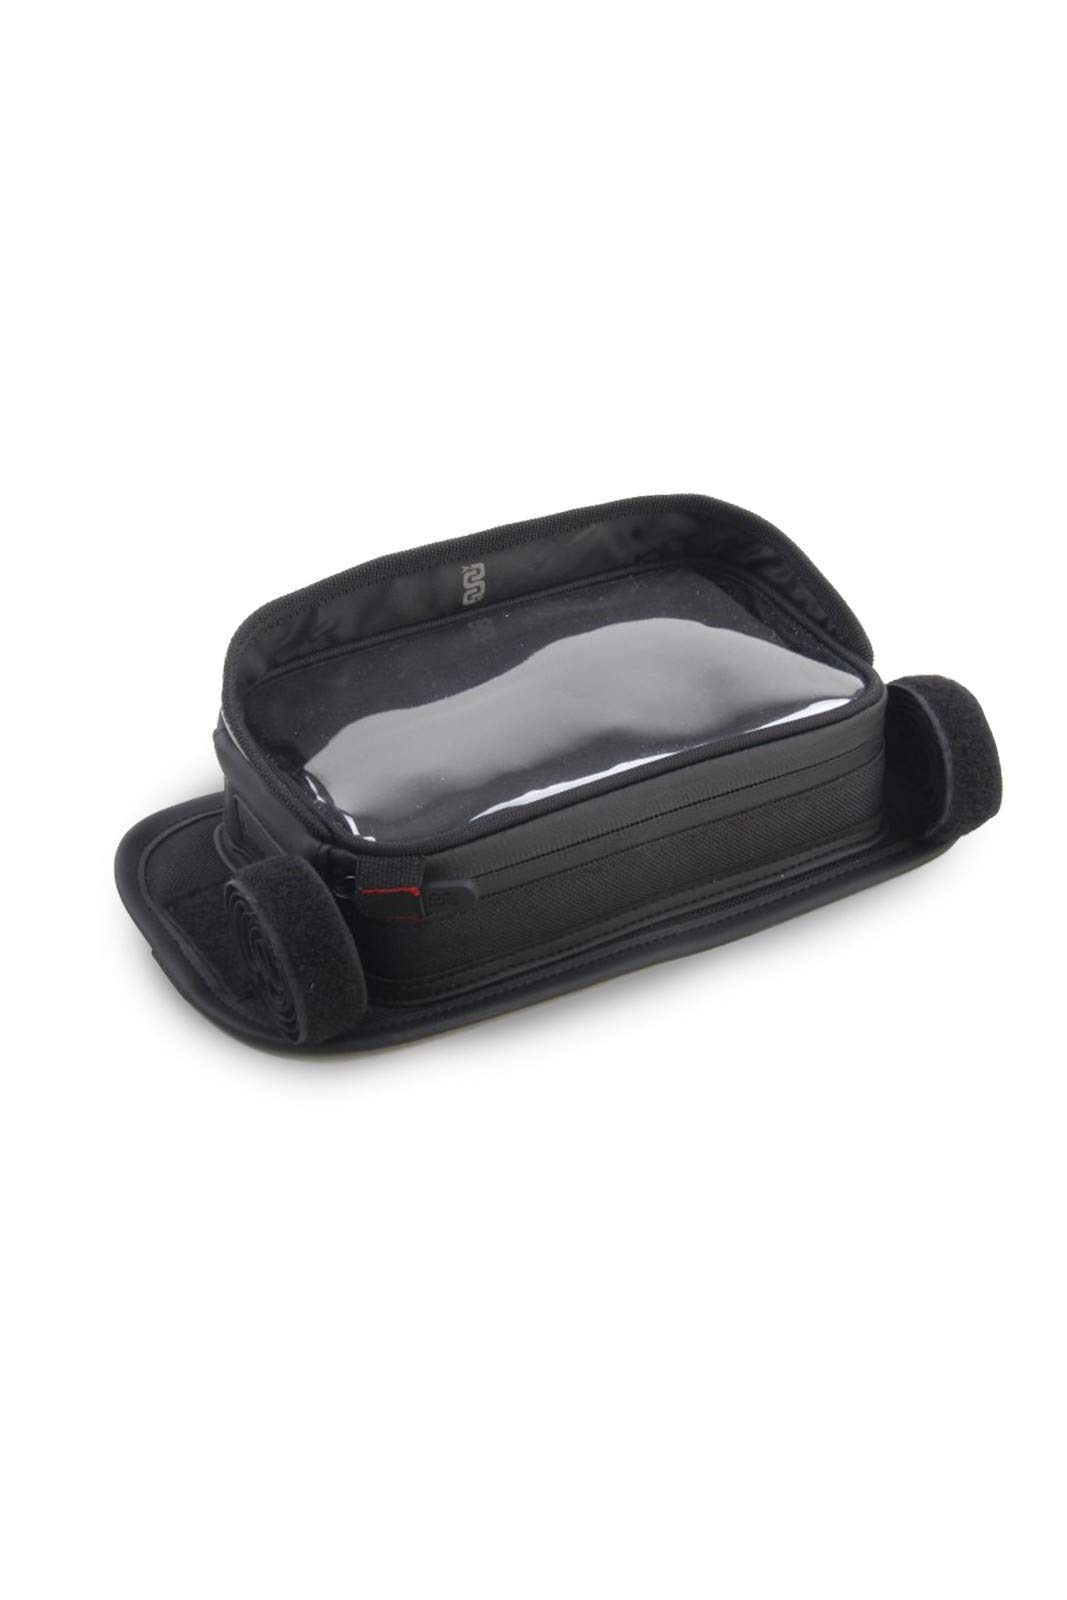 OJ M155 Case Plus Mini-Zubehörtasche, GPS, oder Smartphone mit Schnellbefestigung, schwarz, 17,5 x 11,5 x 5 cm von OJ